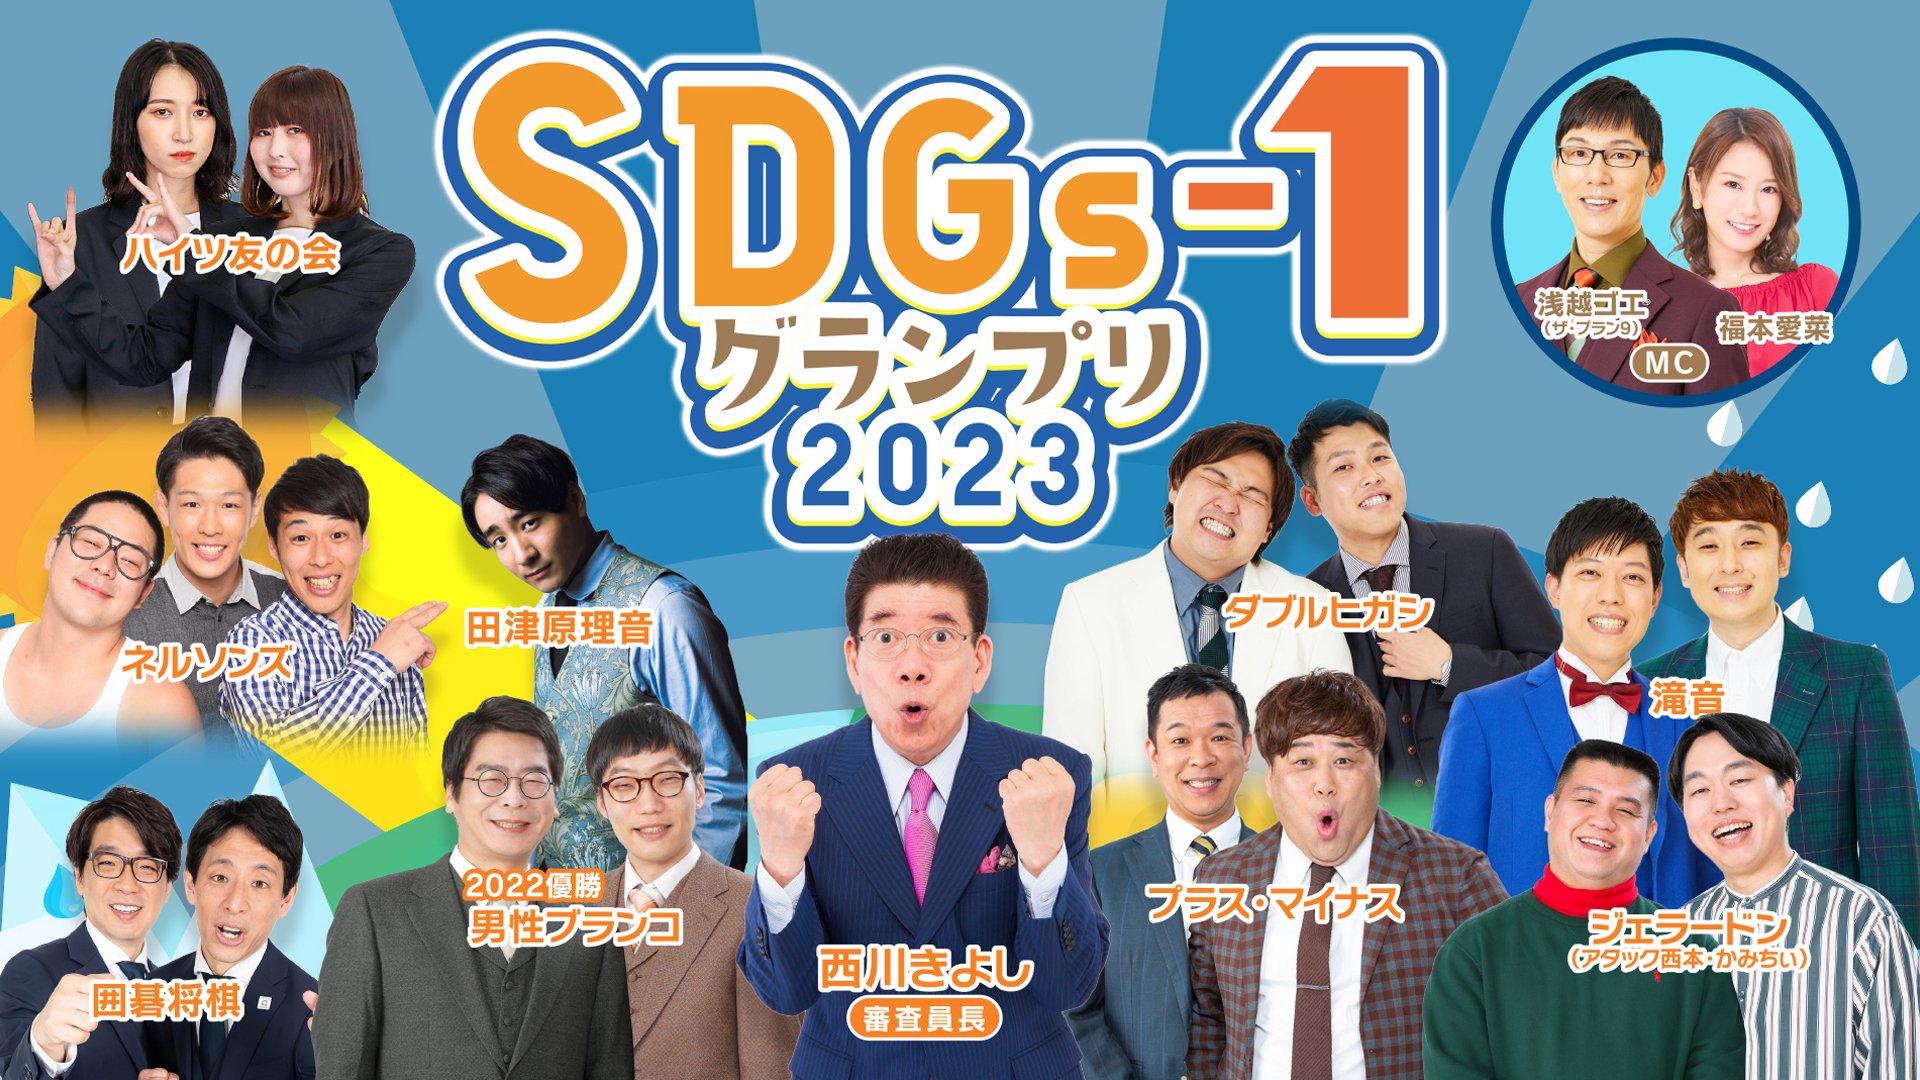 SDGs-1グランプリ2023